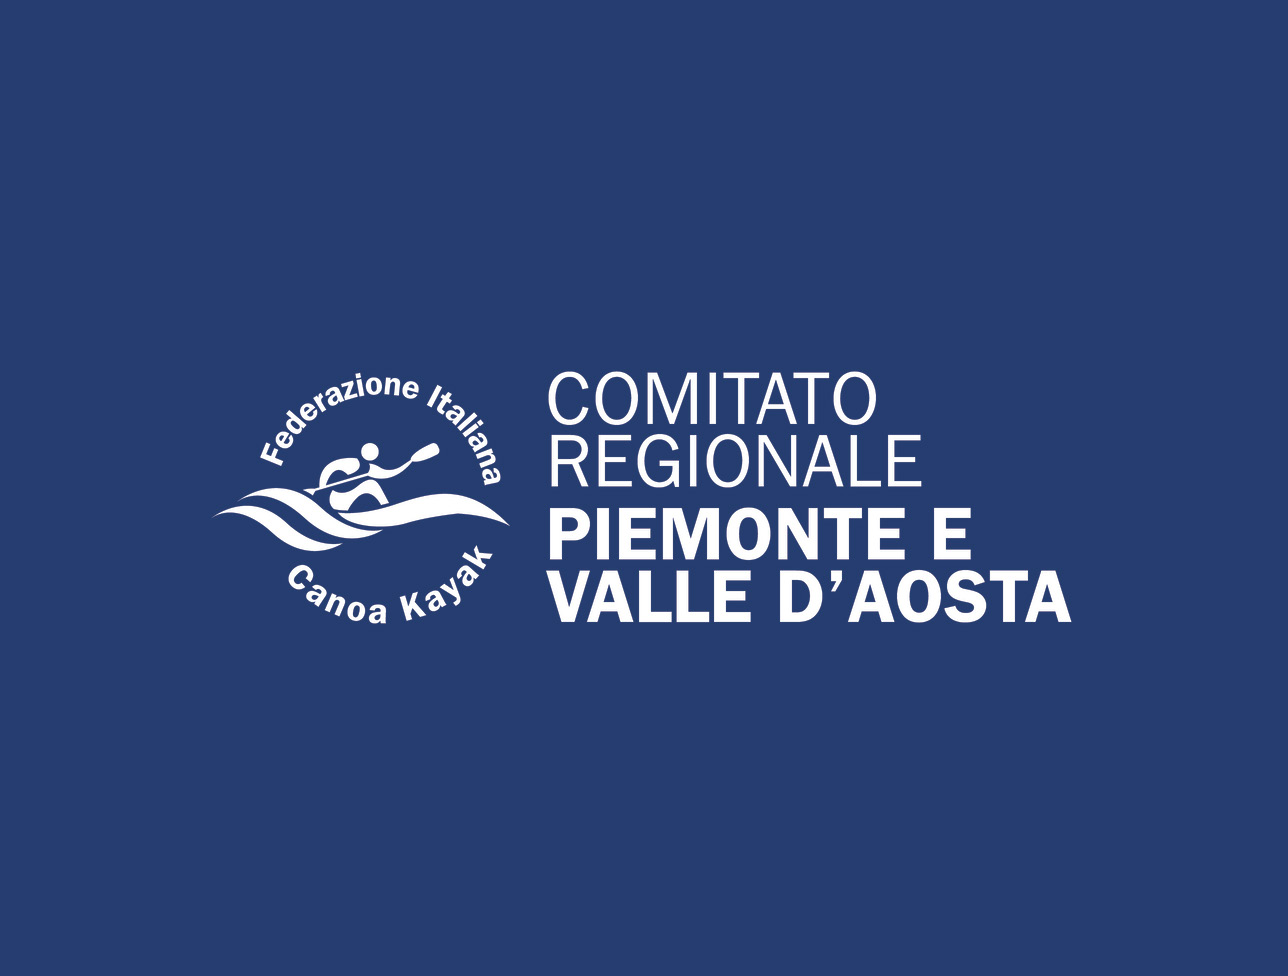 images/comitatiregionali/piemonte/Immagine_SITO.jpg